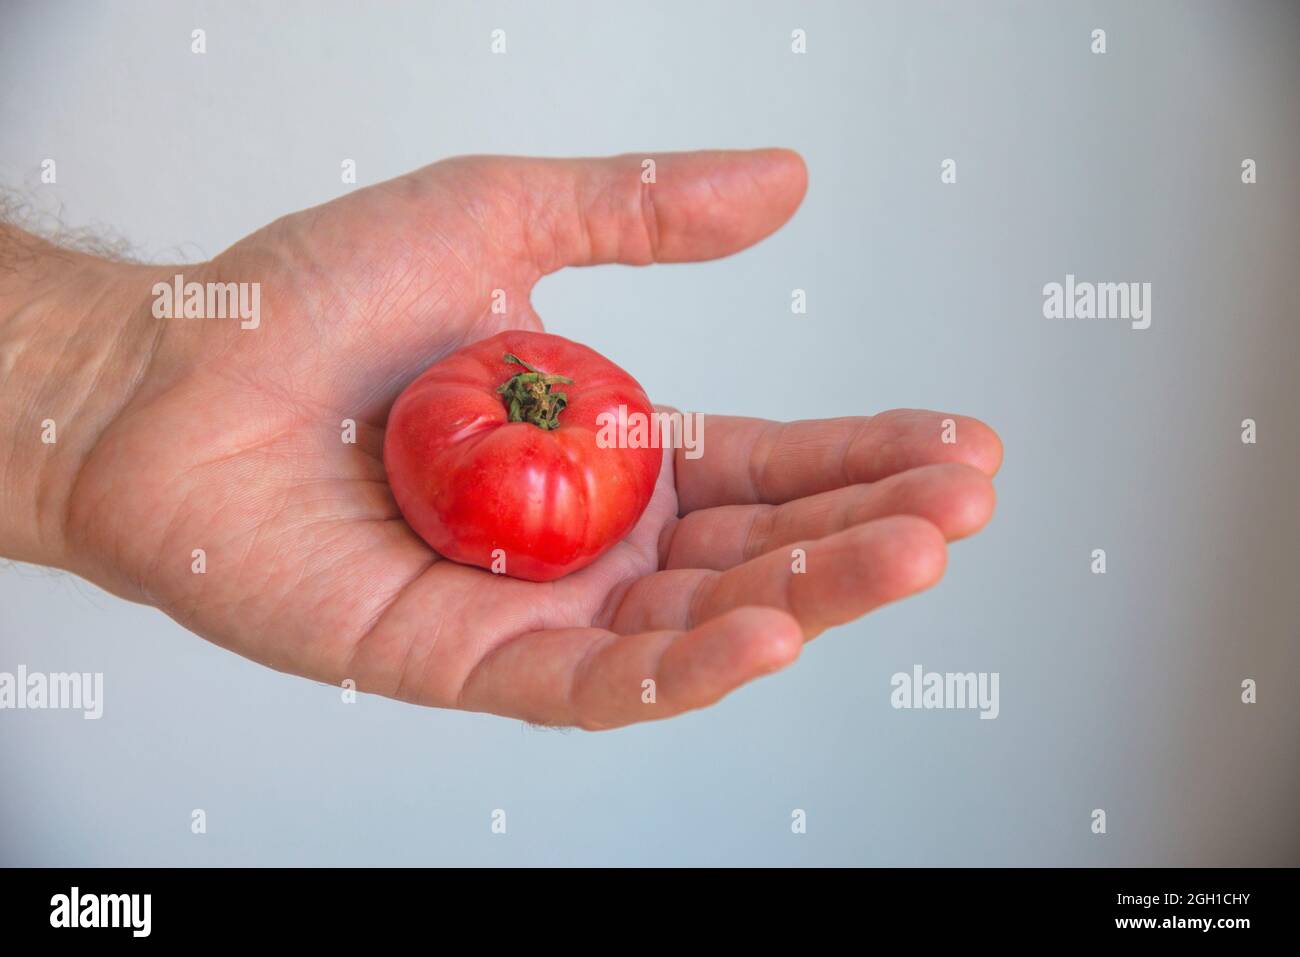 Mano sosteniendo un pequeño tomate. Foto de stock